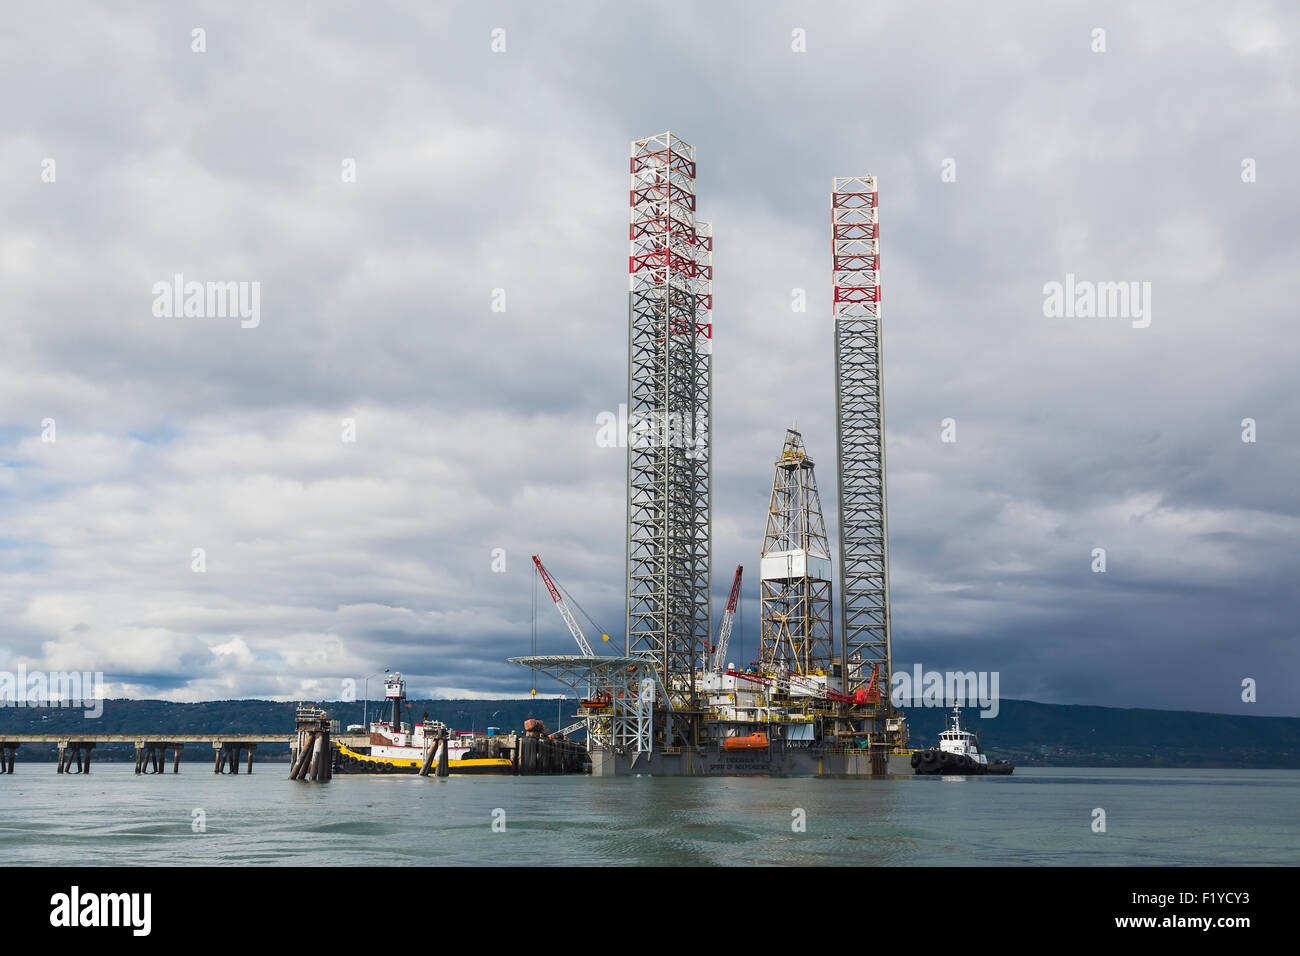 Pier,Alaska,Oil Rig,jack-up mobile drilling rig Stock Photo